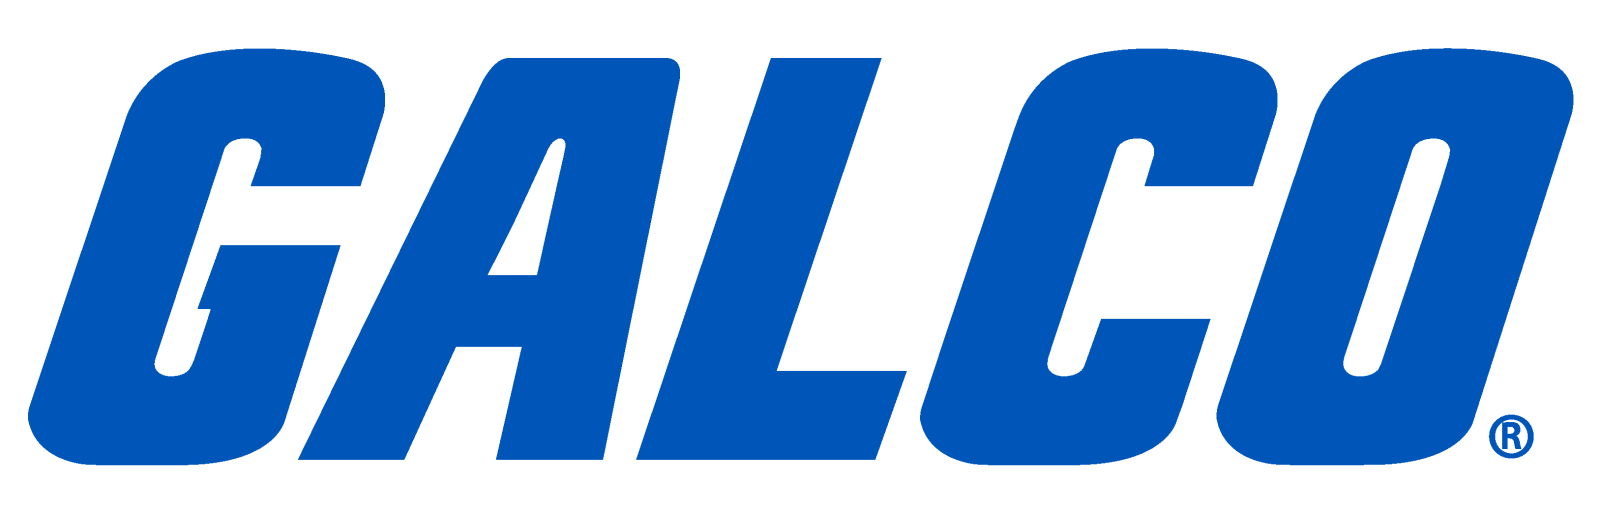 galco-logo-blue (2)